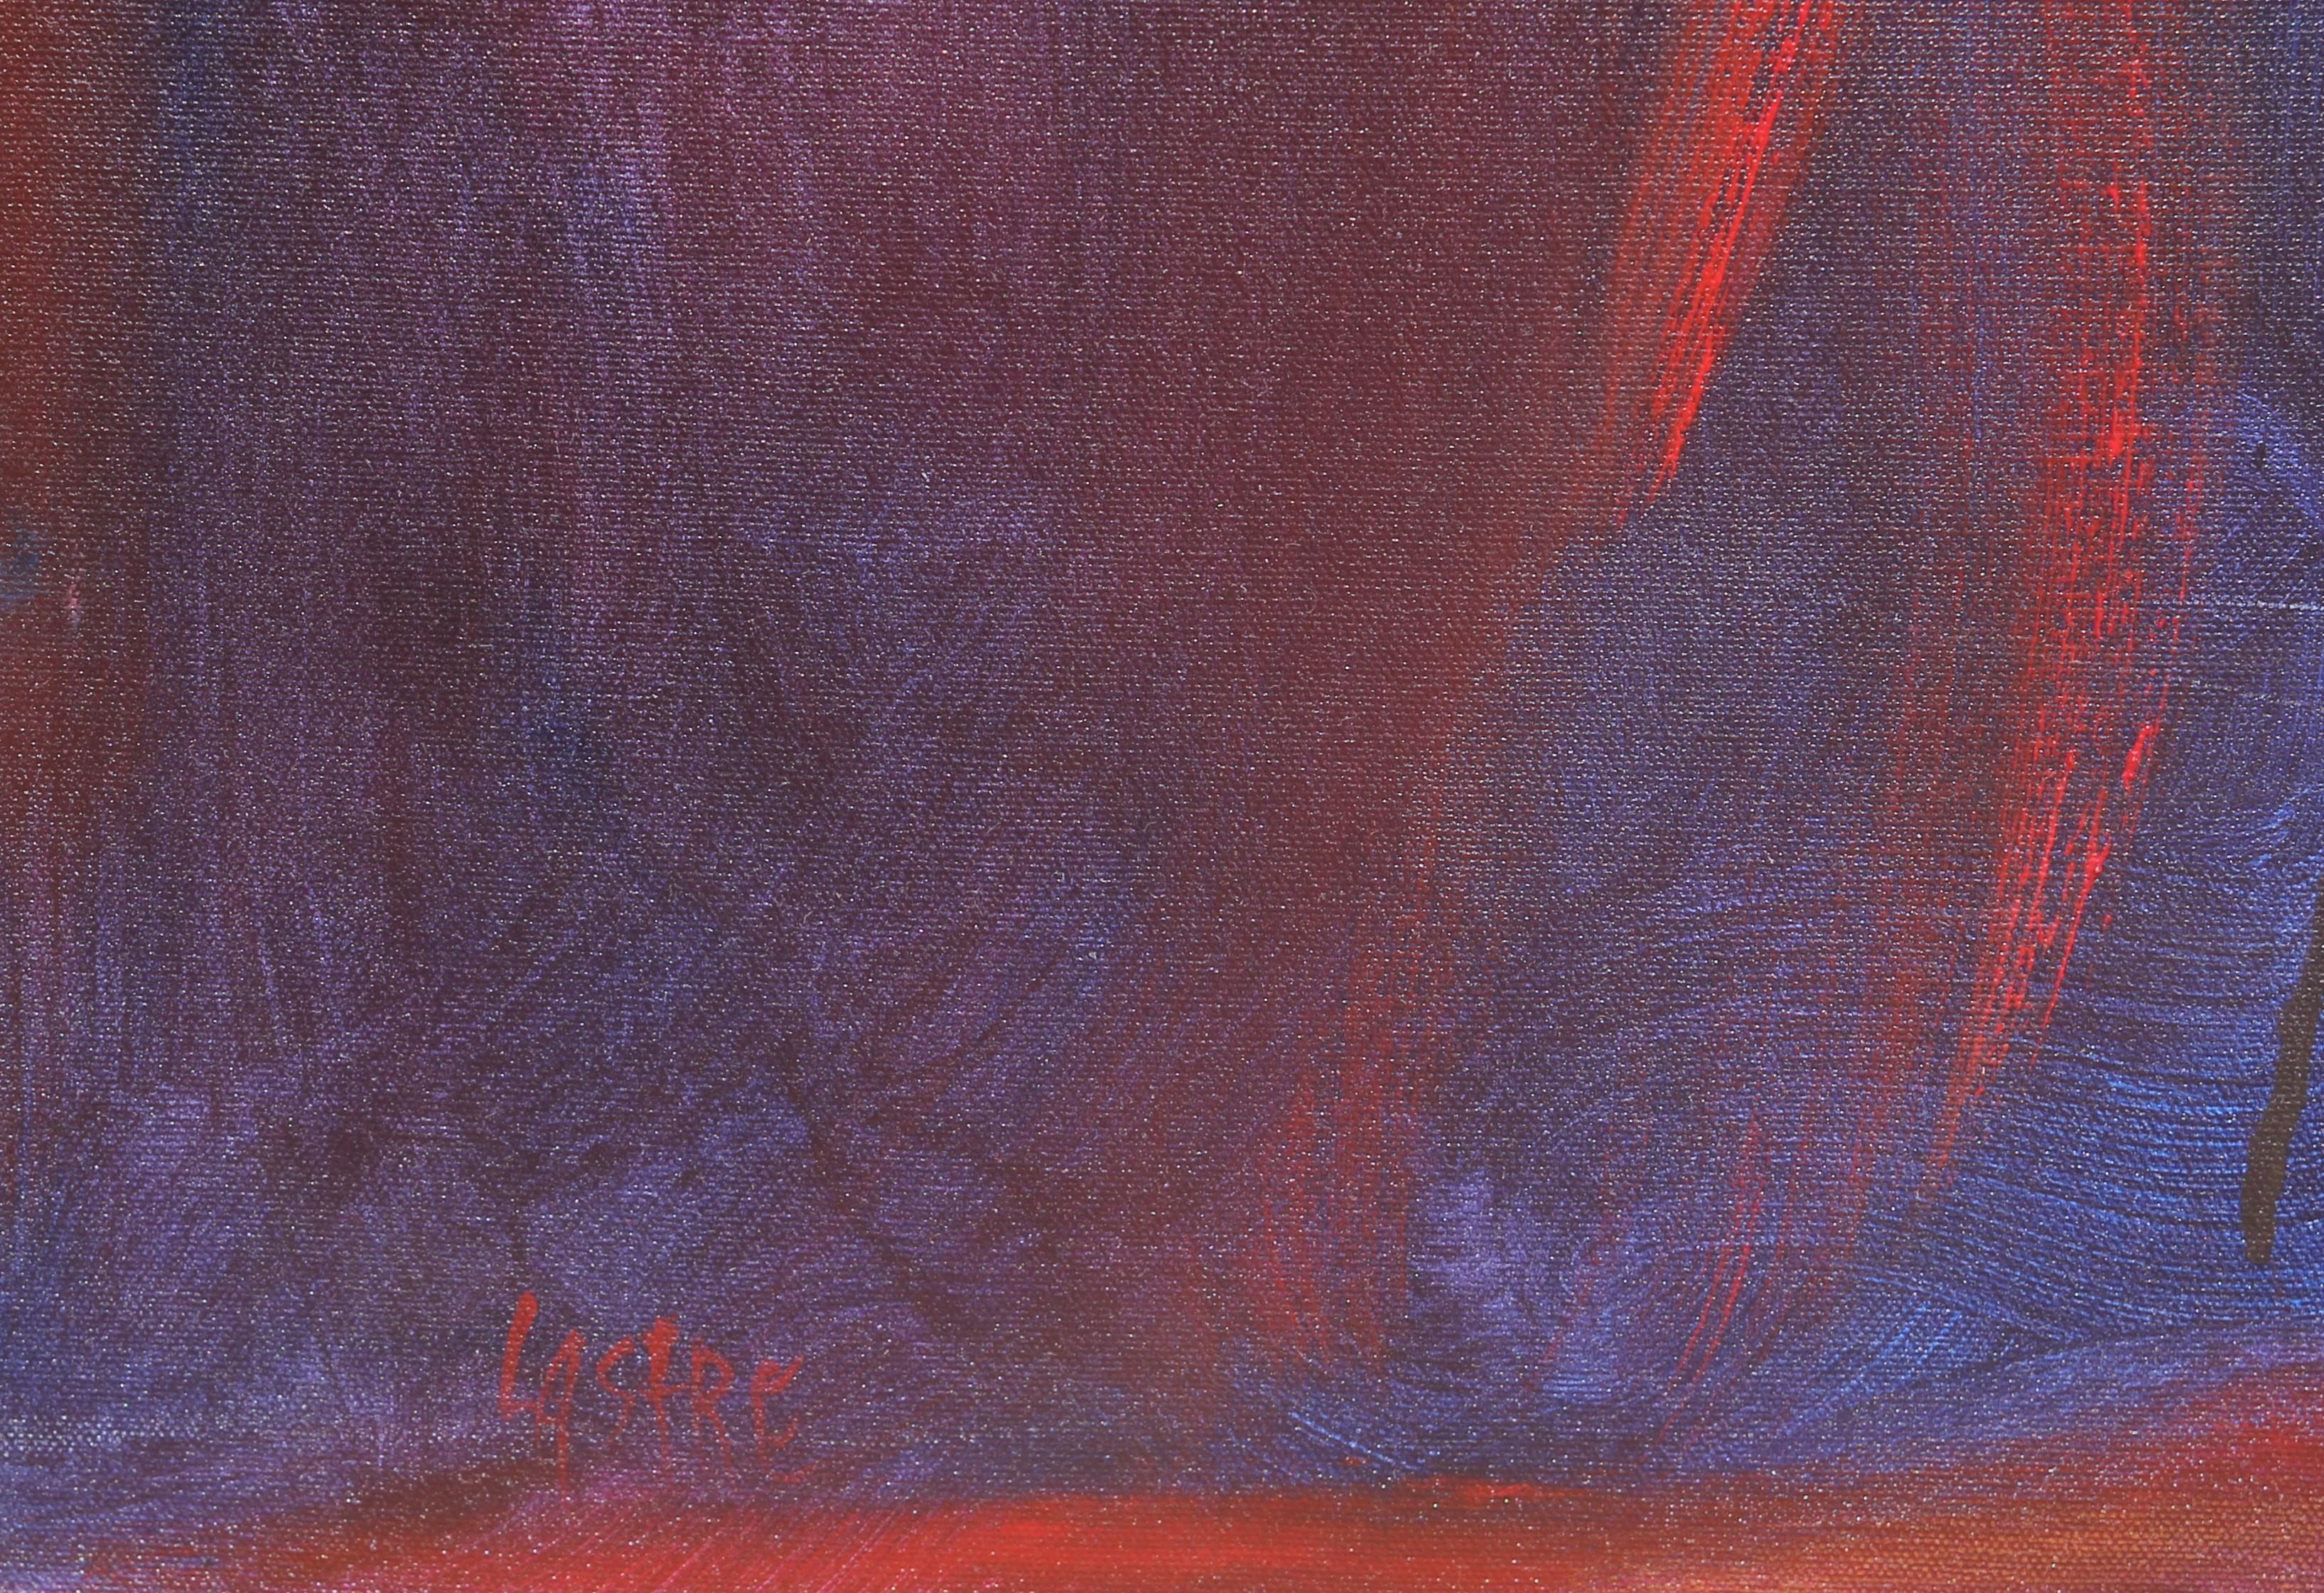 Sounding V Großes rotes, orangefarbenes und blaues abstraktes expressionistisches Gemälde – Painting von Karen Lastre